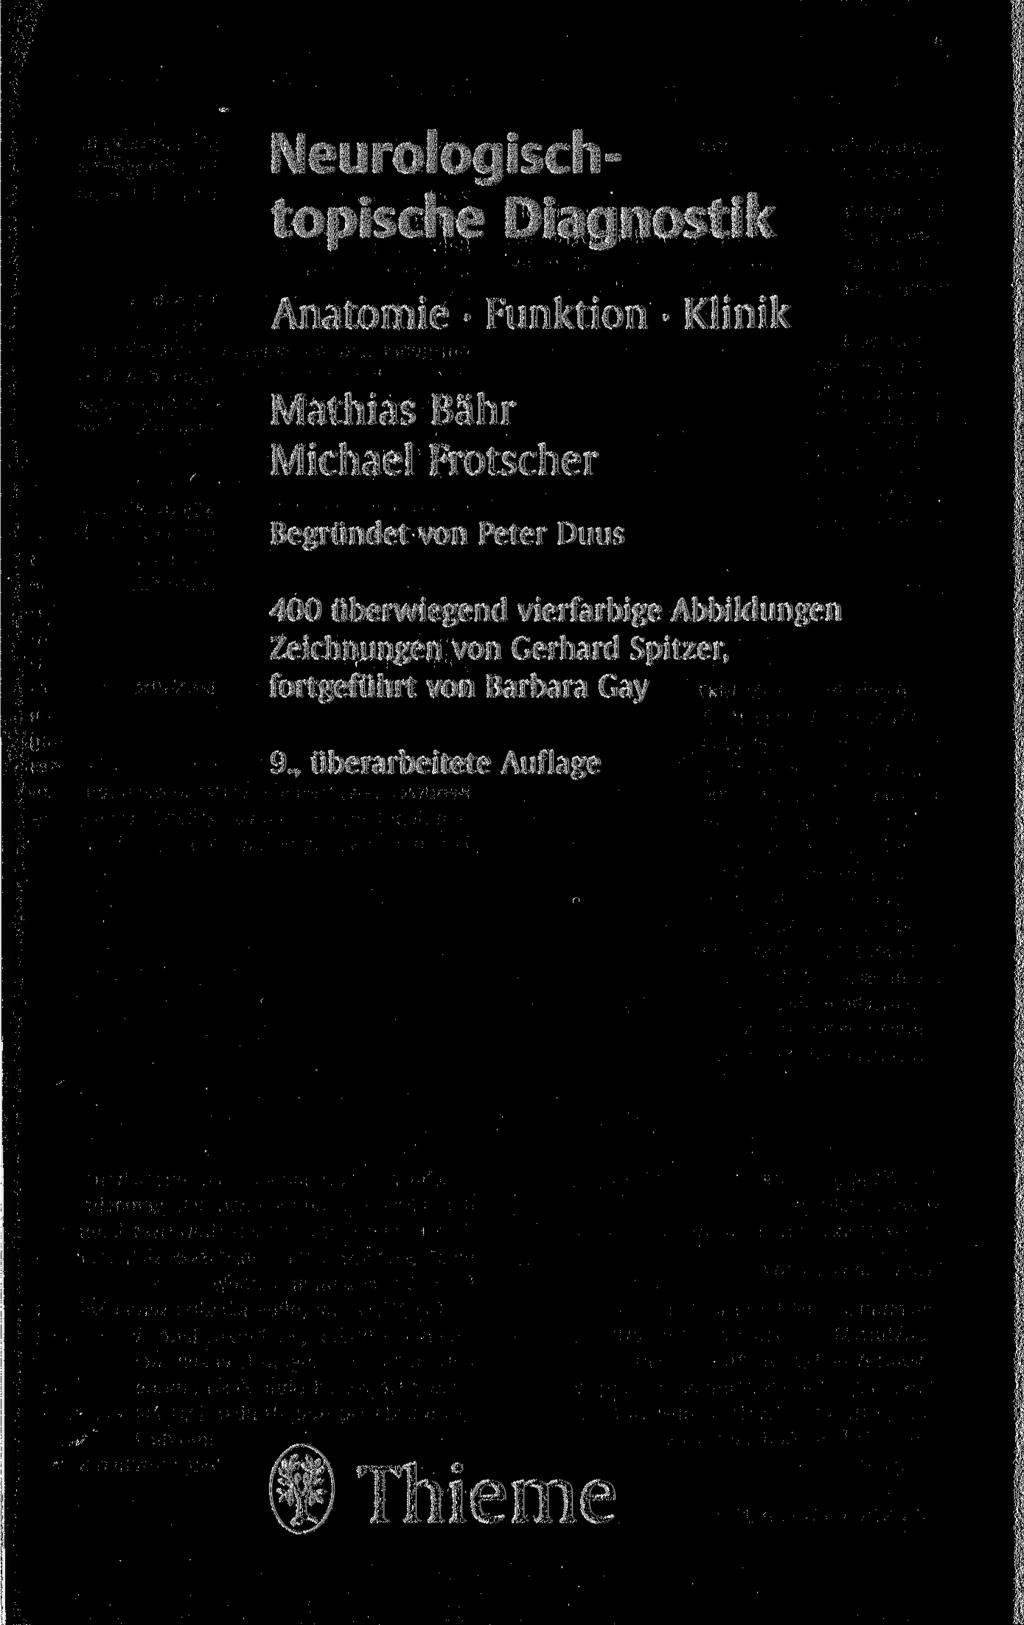 Neurologischtopische Diagnostik Anatomie Funktion Klinik Mathias Bahr Michael Frotscher Begründet von Peter Duus 400